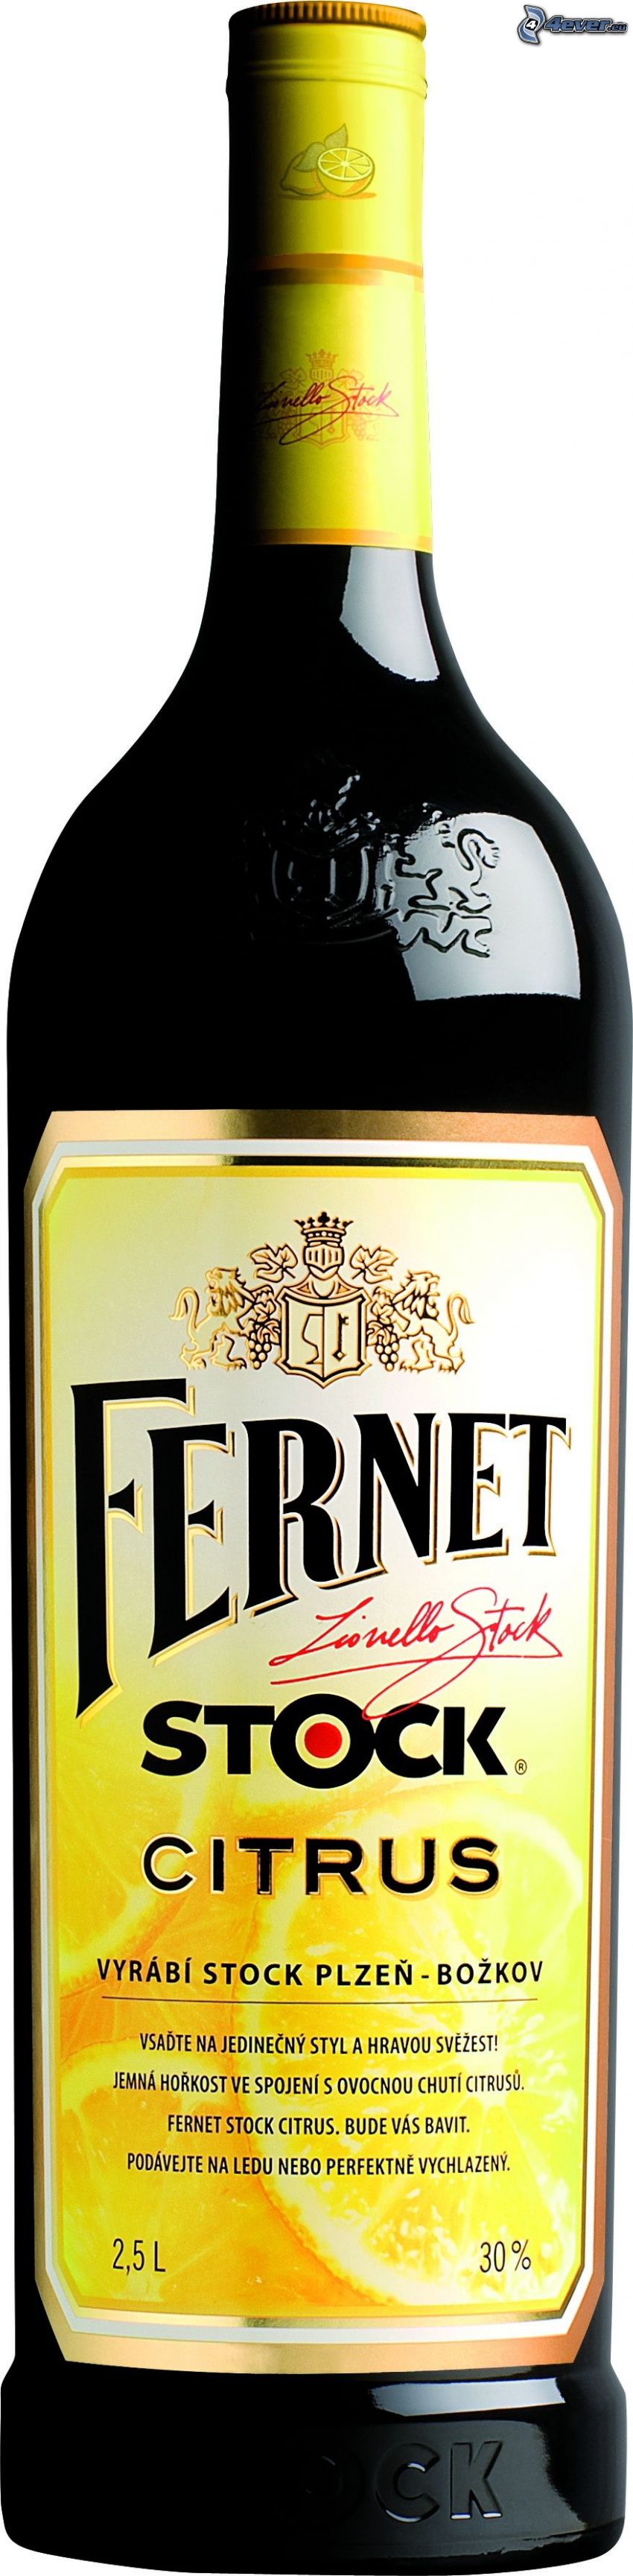 Fernet Stock Citrus, flaska, alkohol